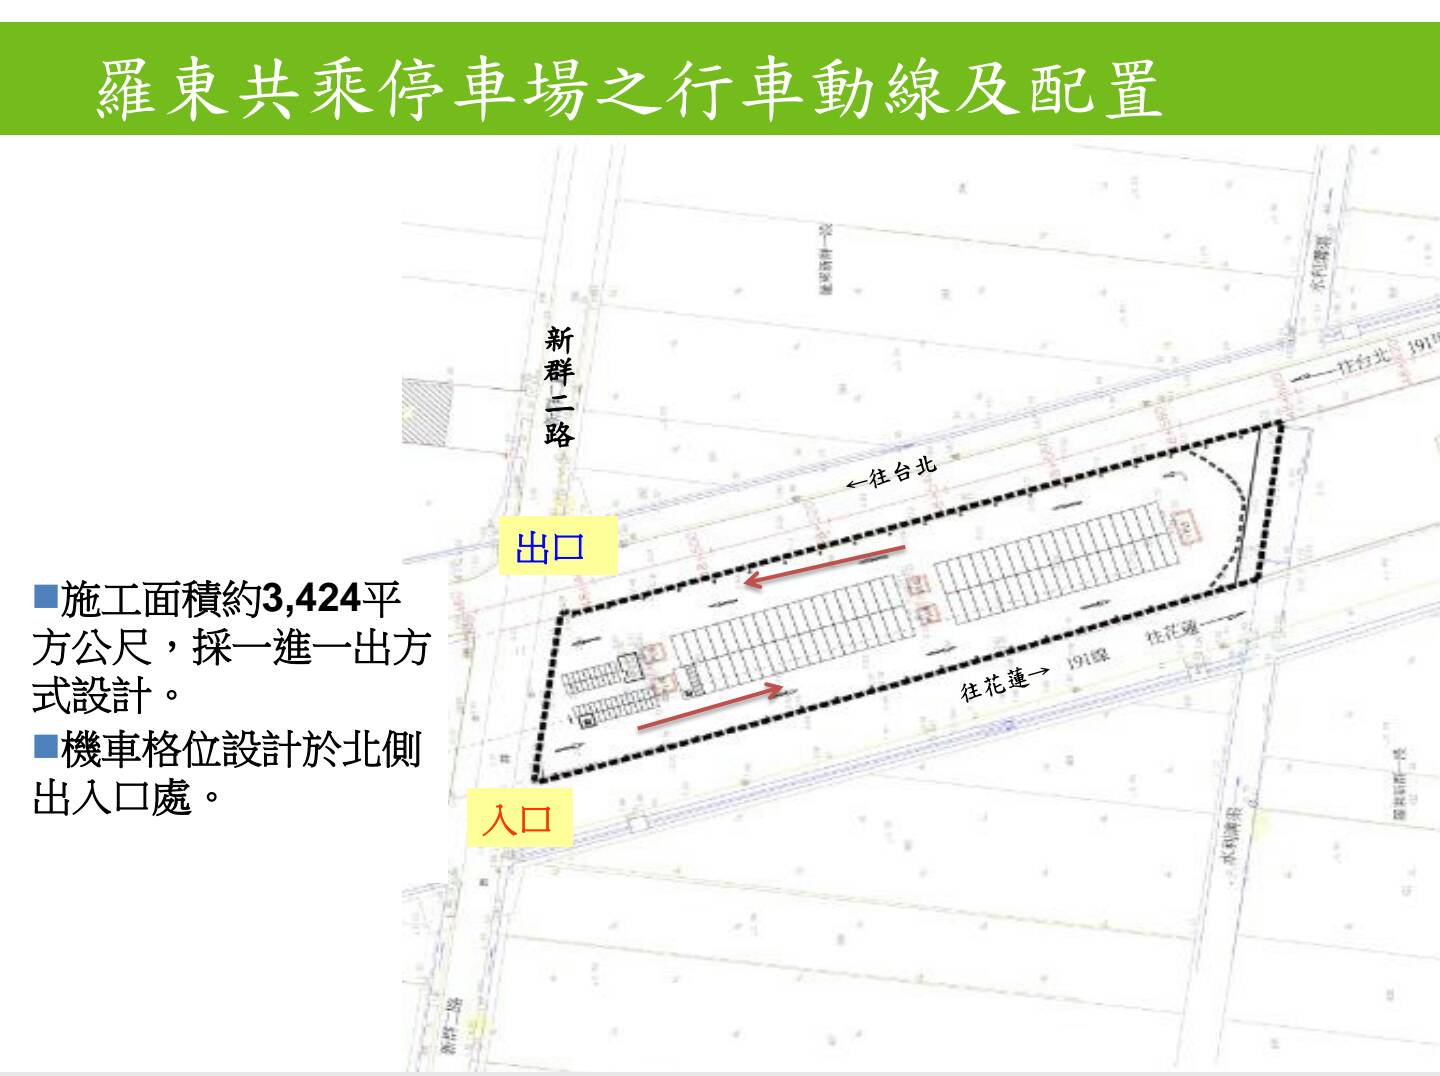 嘉惠來往台北通勤族 羅東共乘停車場正式啟用